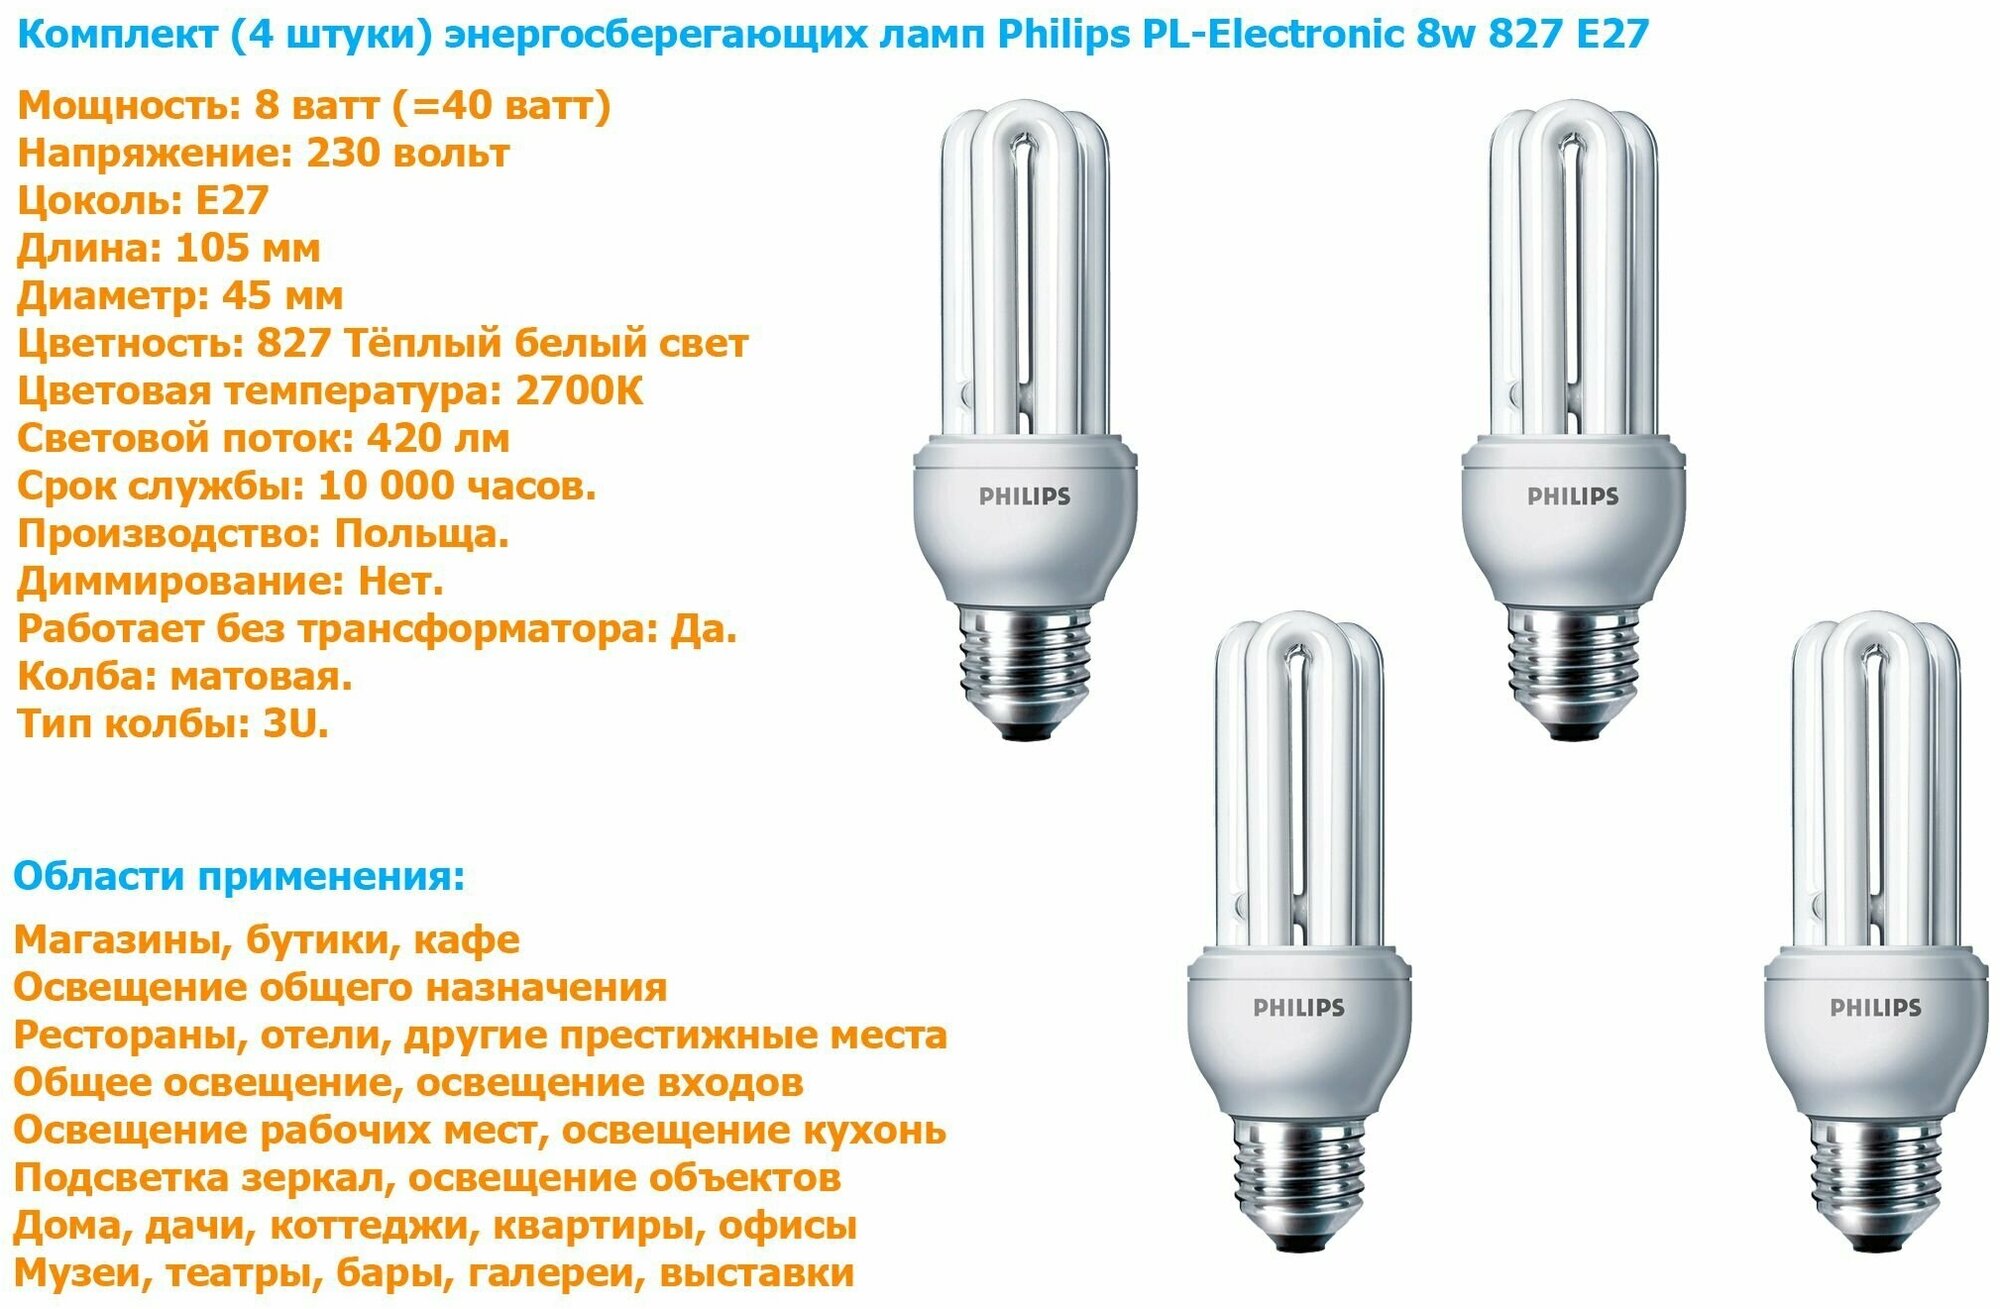 Лампочка Philips PL-Electronic 8w 827 E27 энергосберегающая, теплый белый свет / 4 штуки